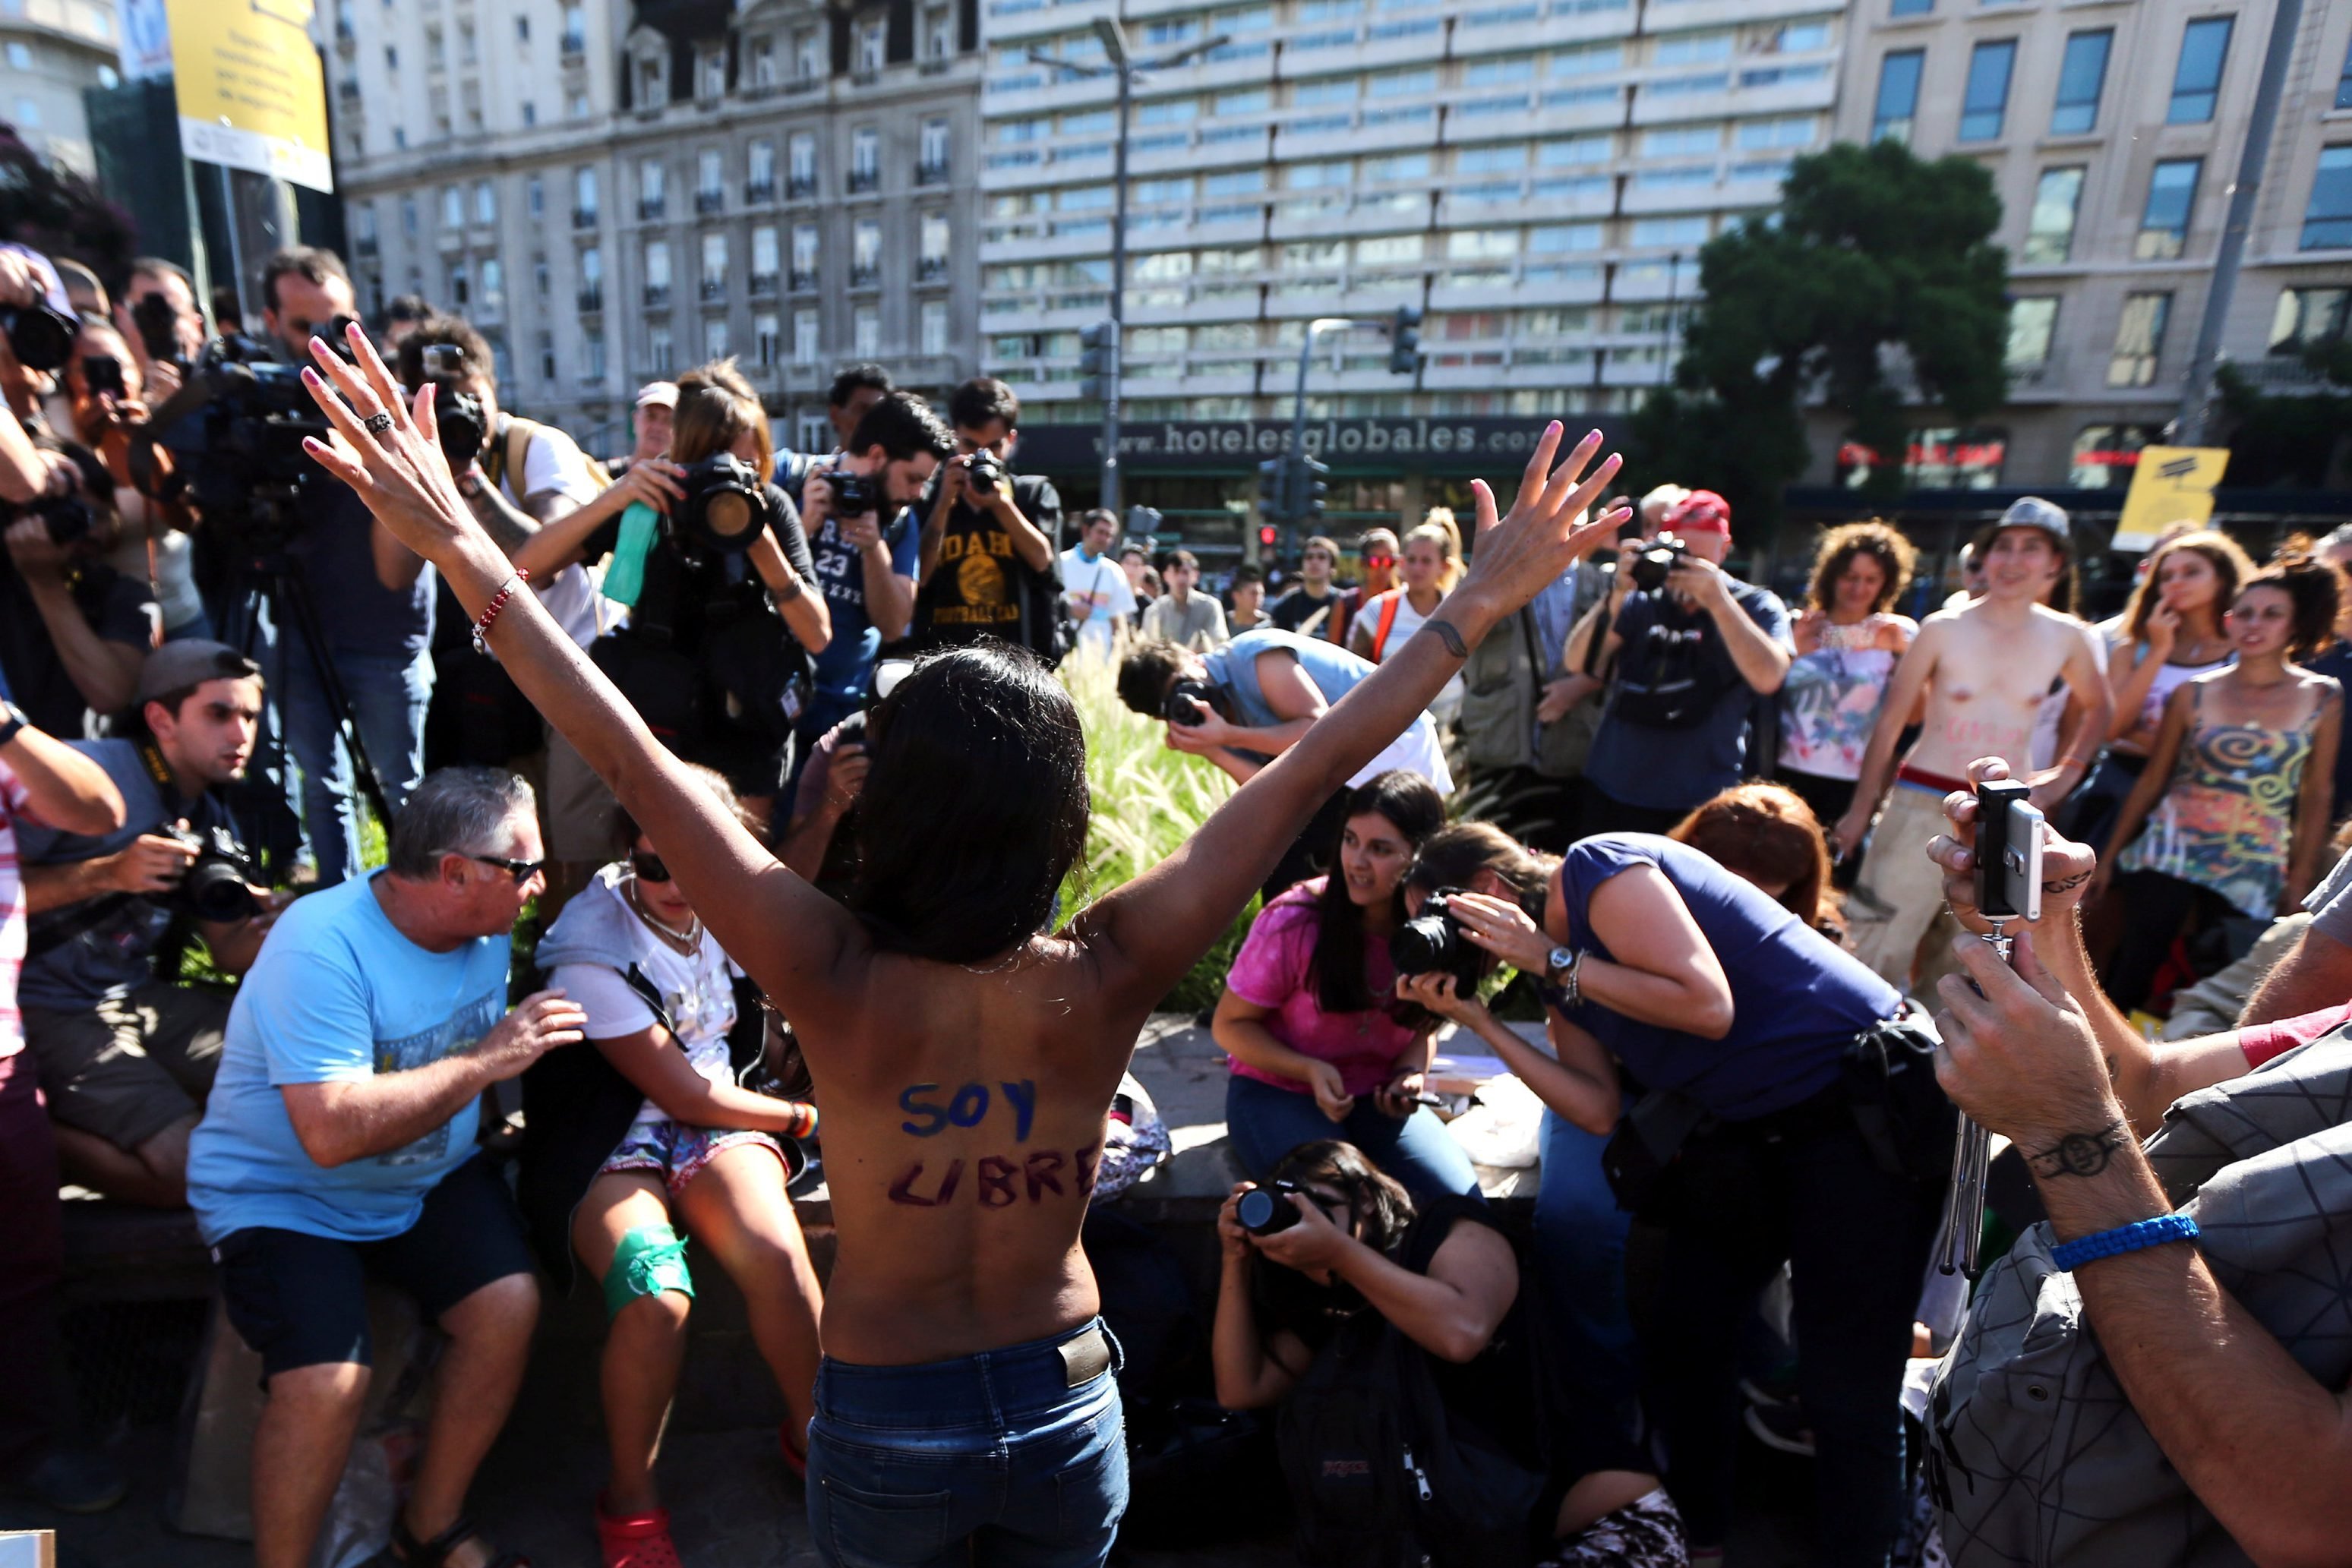 Mulheres fazem topless durante protesto a favor de topless em praias na Argentina em 07/02/2017